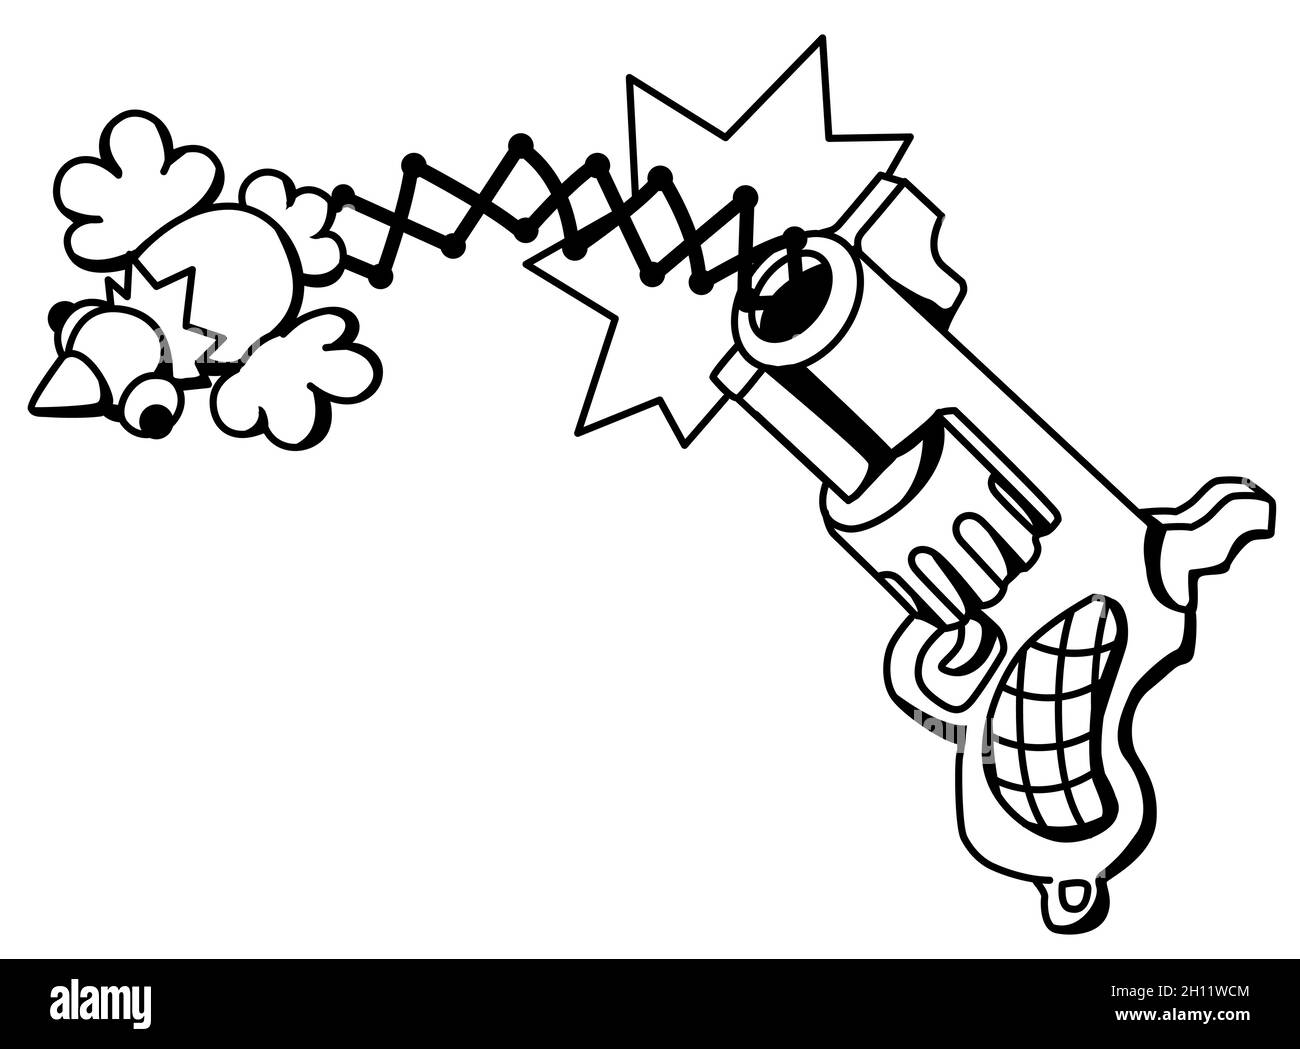 Joke Gunshot avec oiseau volant dessin de ligne de bande dessinée, vecteur, horizontal, noir et blanc, isolé Illustration de Vecteur